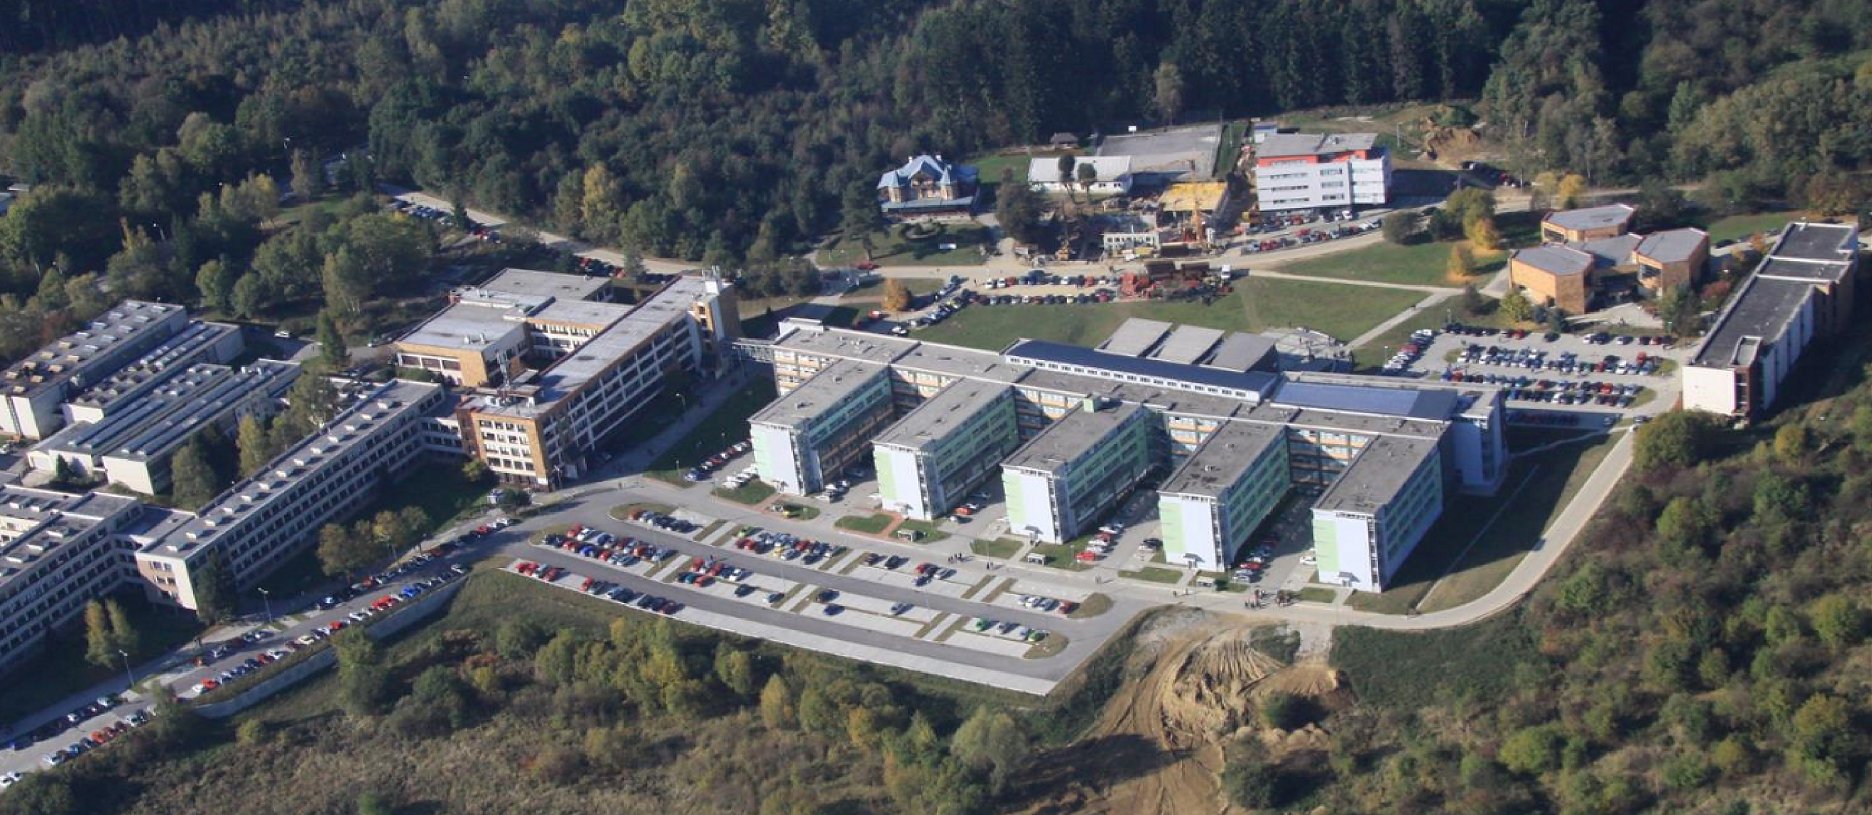 Letecká snímka areálu Žilinskej univerzity  Archív UNIZA